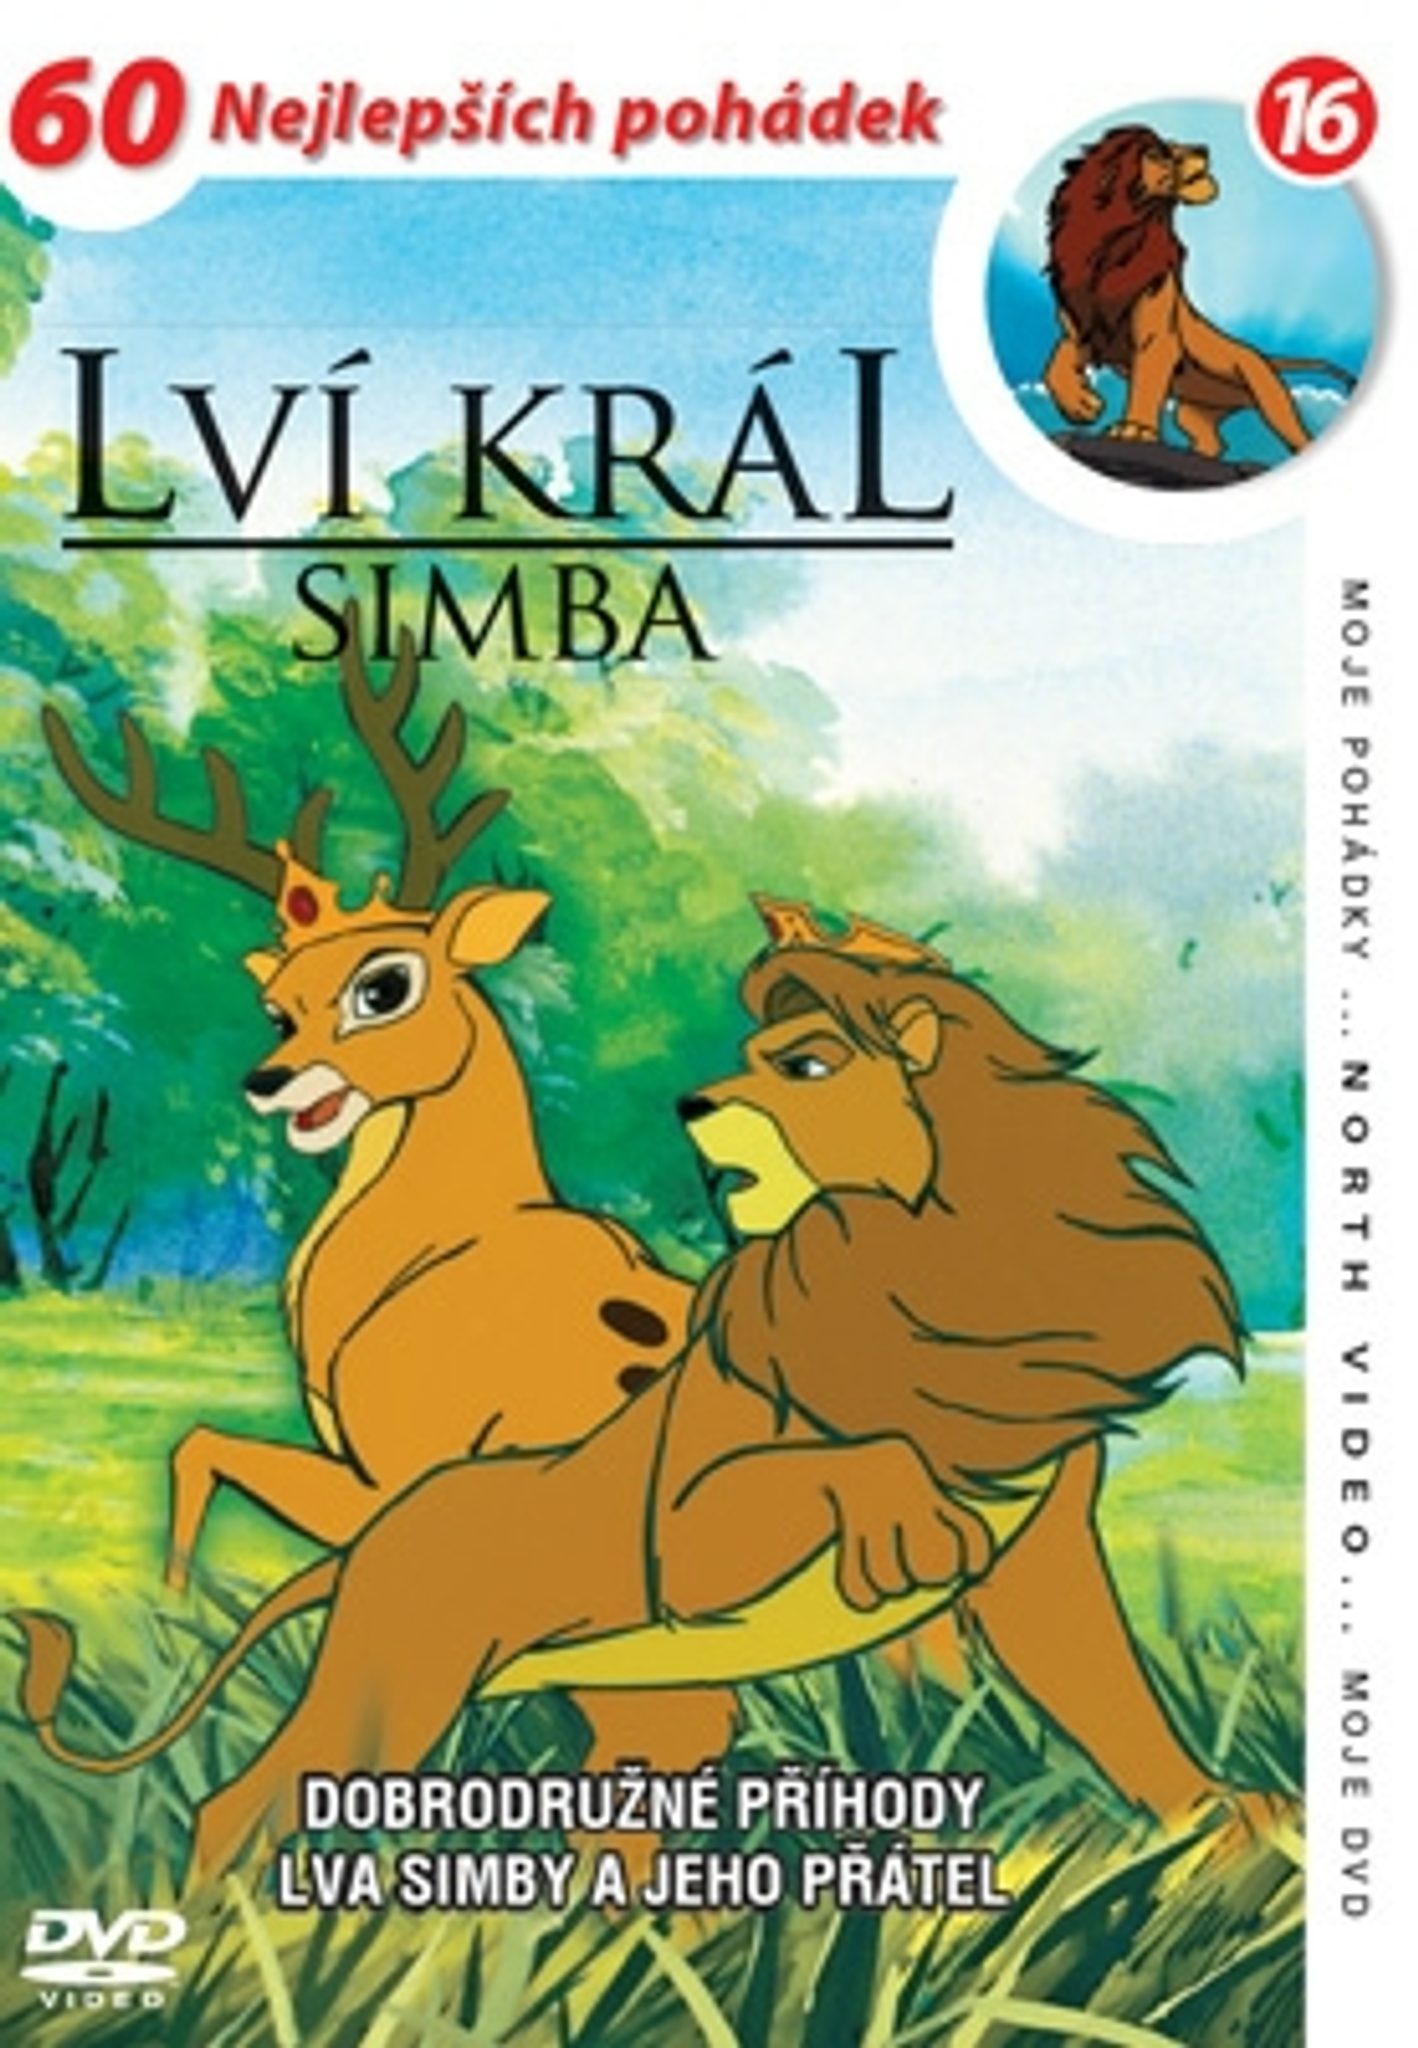 DVD Lv krl - Simba 16 - Kliknutm na obrzek zavete